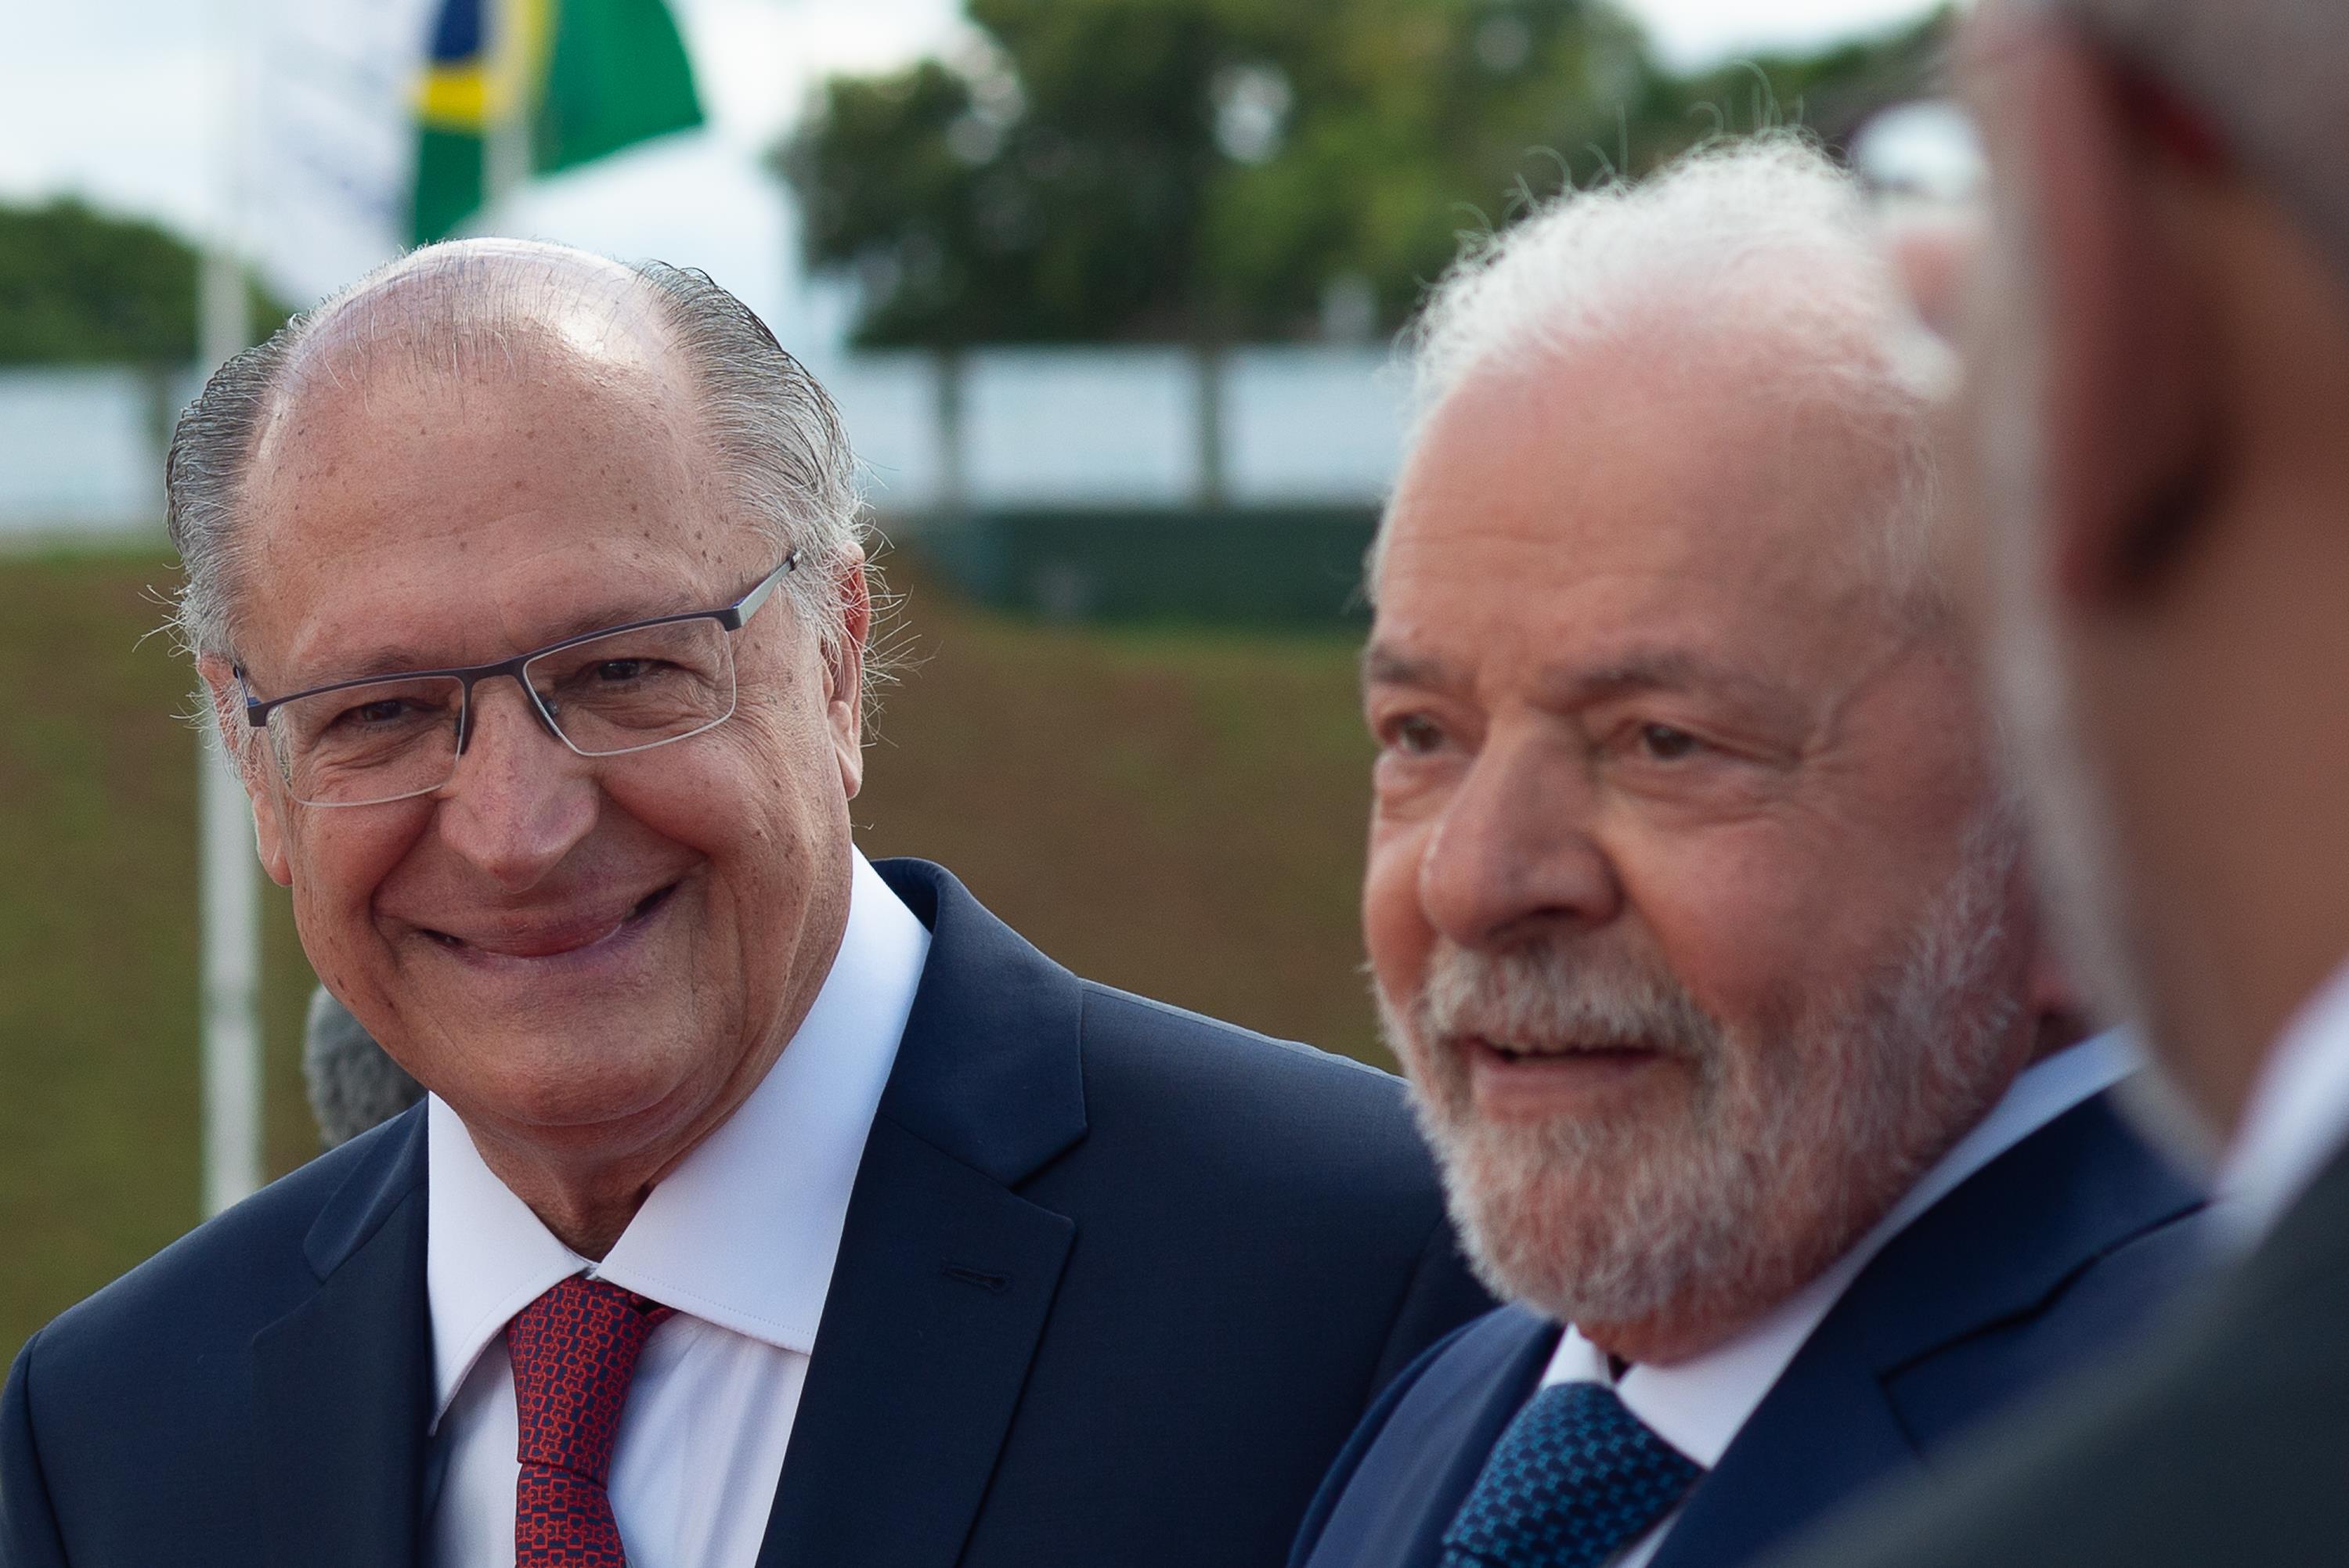 Plano Para Apoiar Indústria Desagradou Lula Dizem Fontes 6029